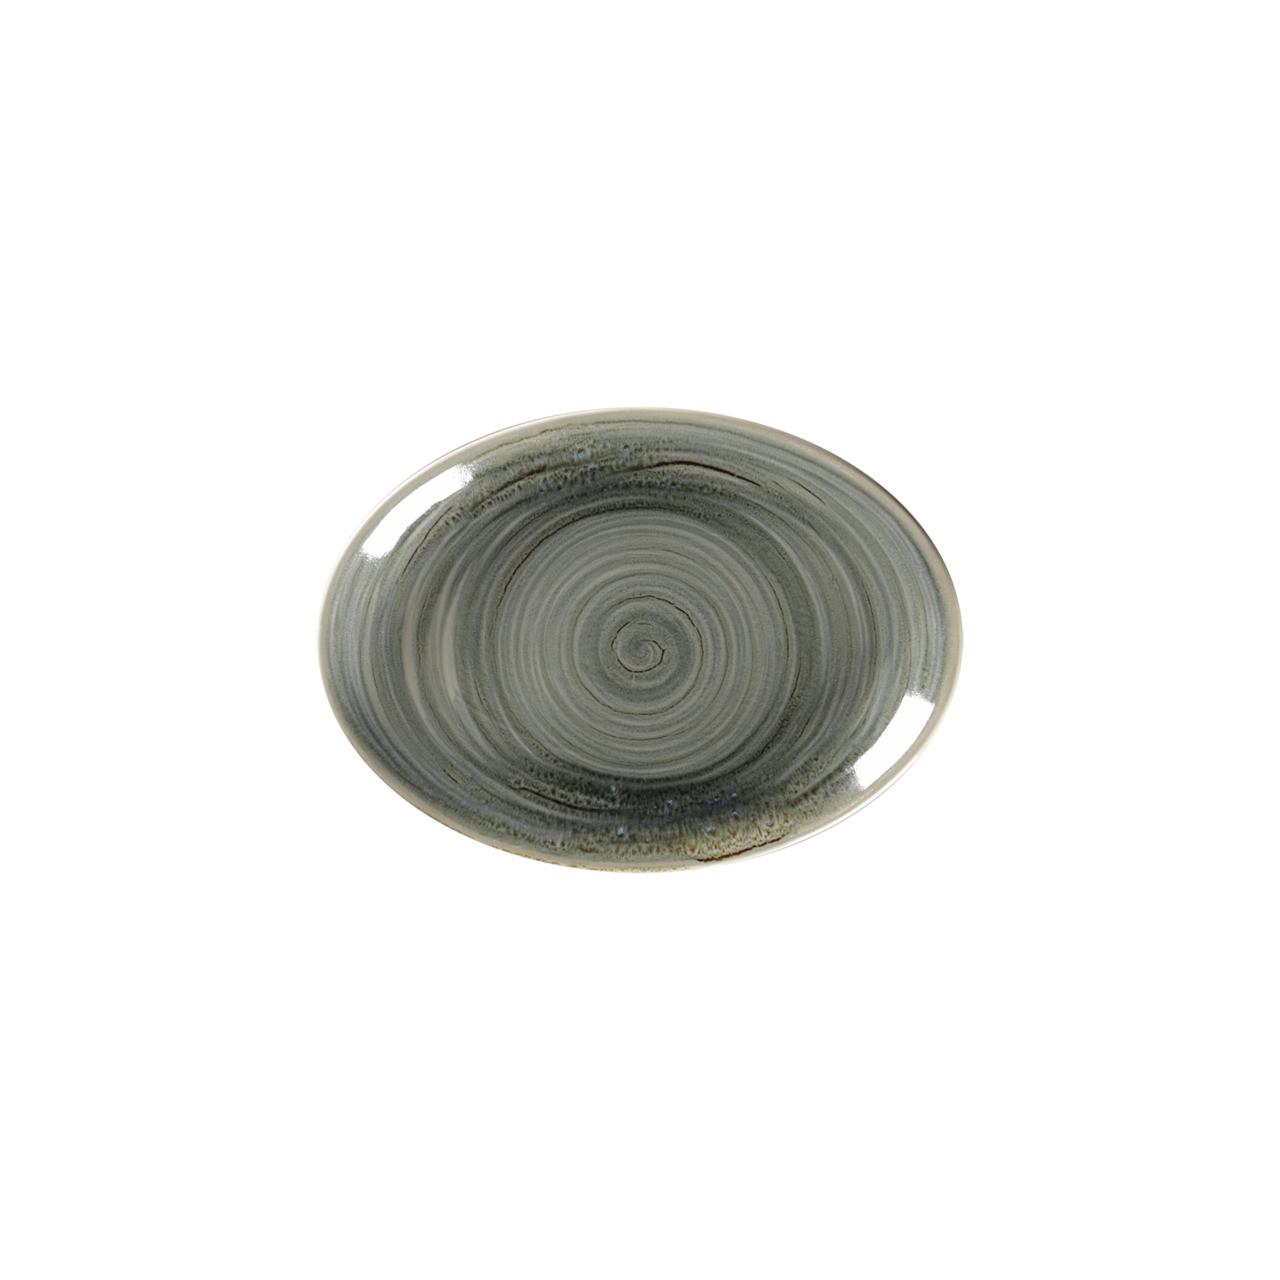 Spot, Platte oval 210 x 150 mm peridot green